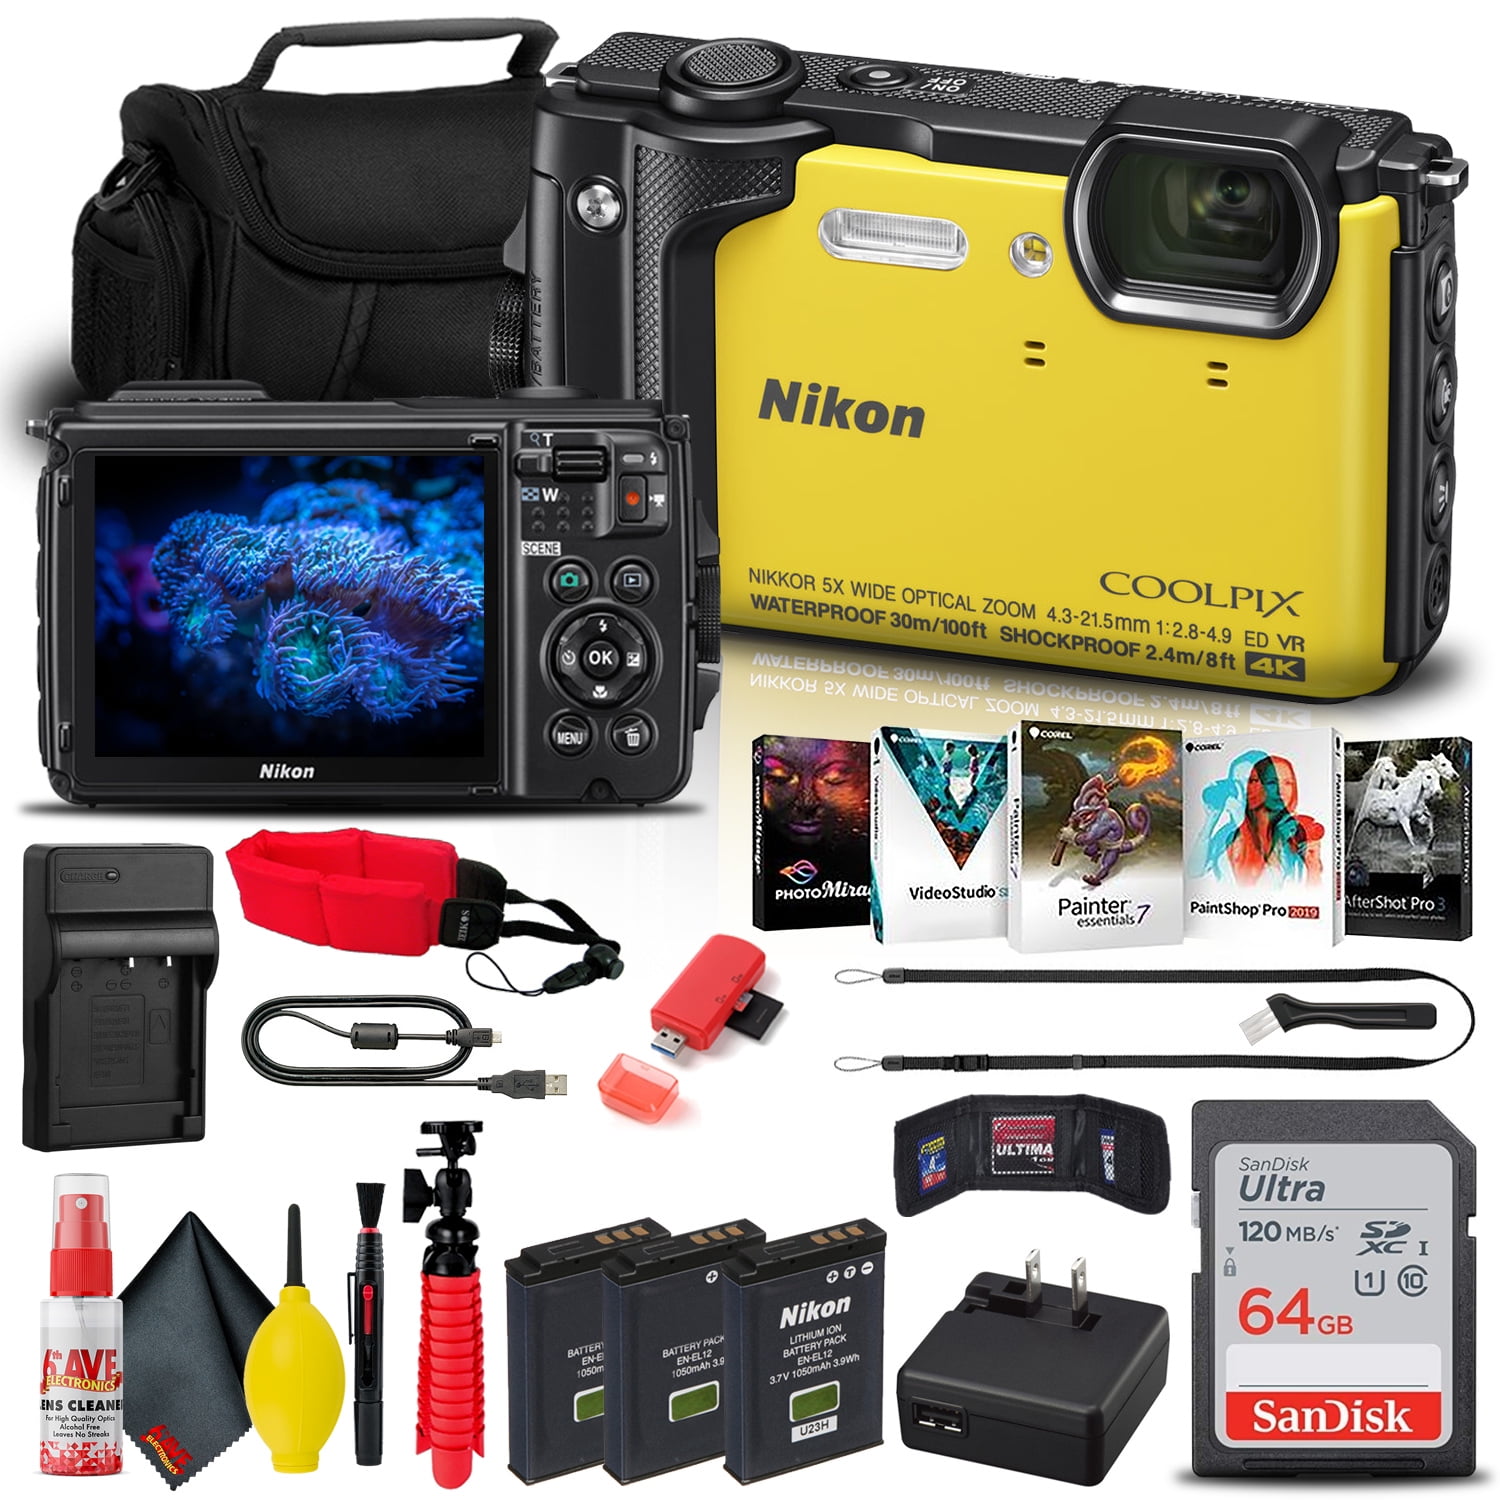 Nikon COOLPIX W300 Digital Camera (Yellow) (26525) + 64GB Card + Bag + More  - Walmart.com